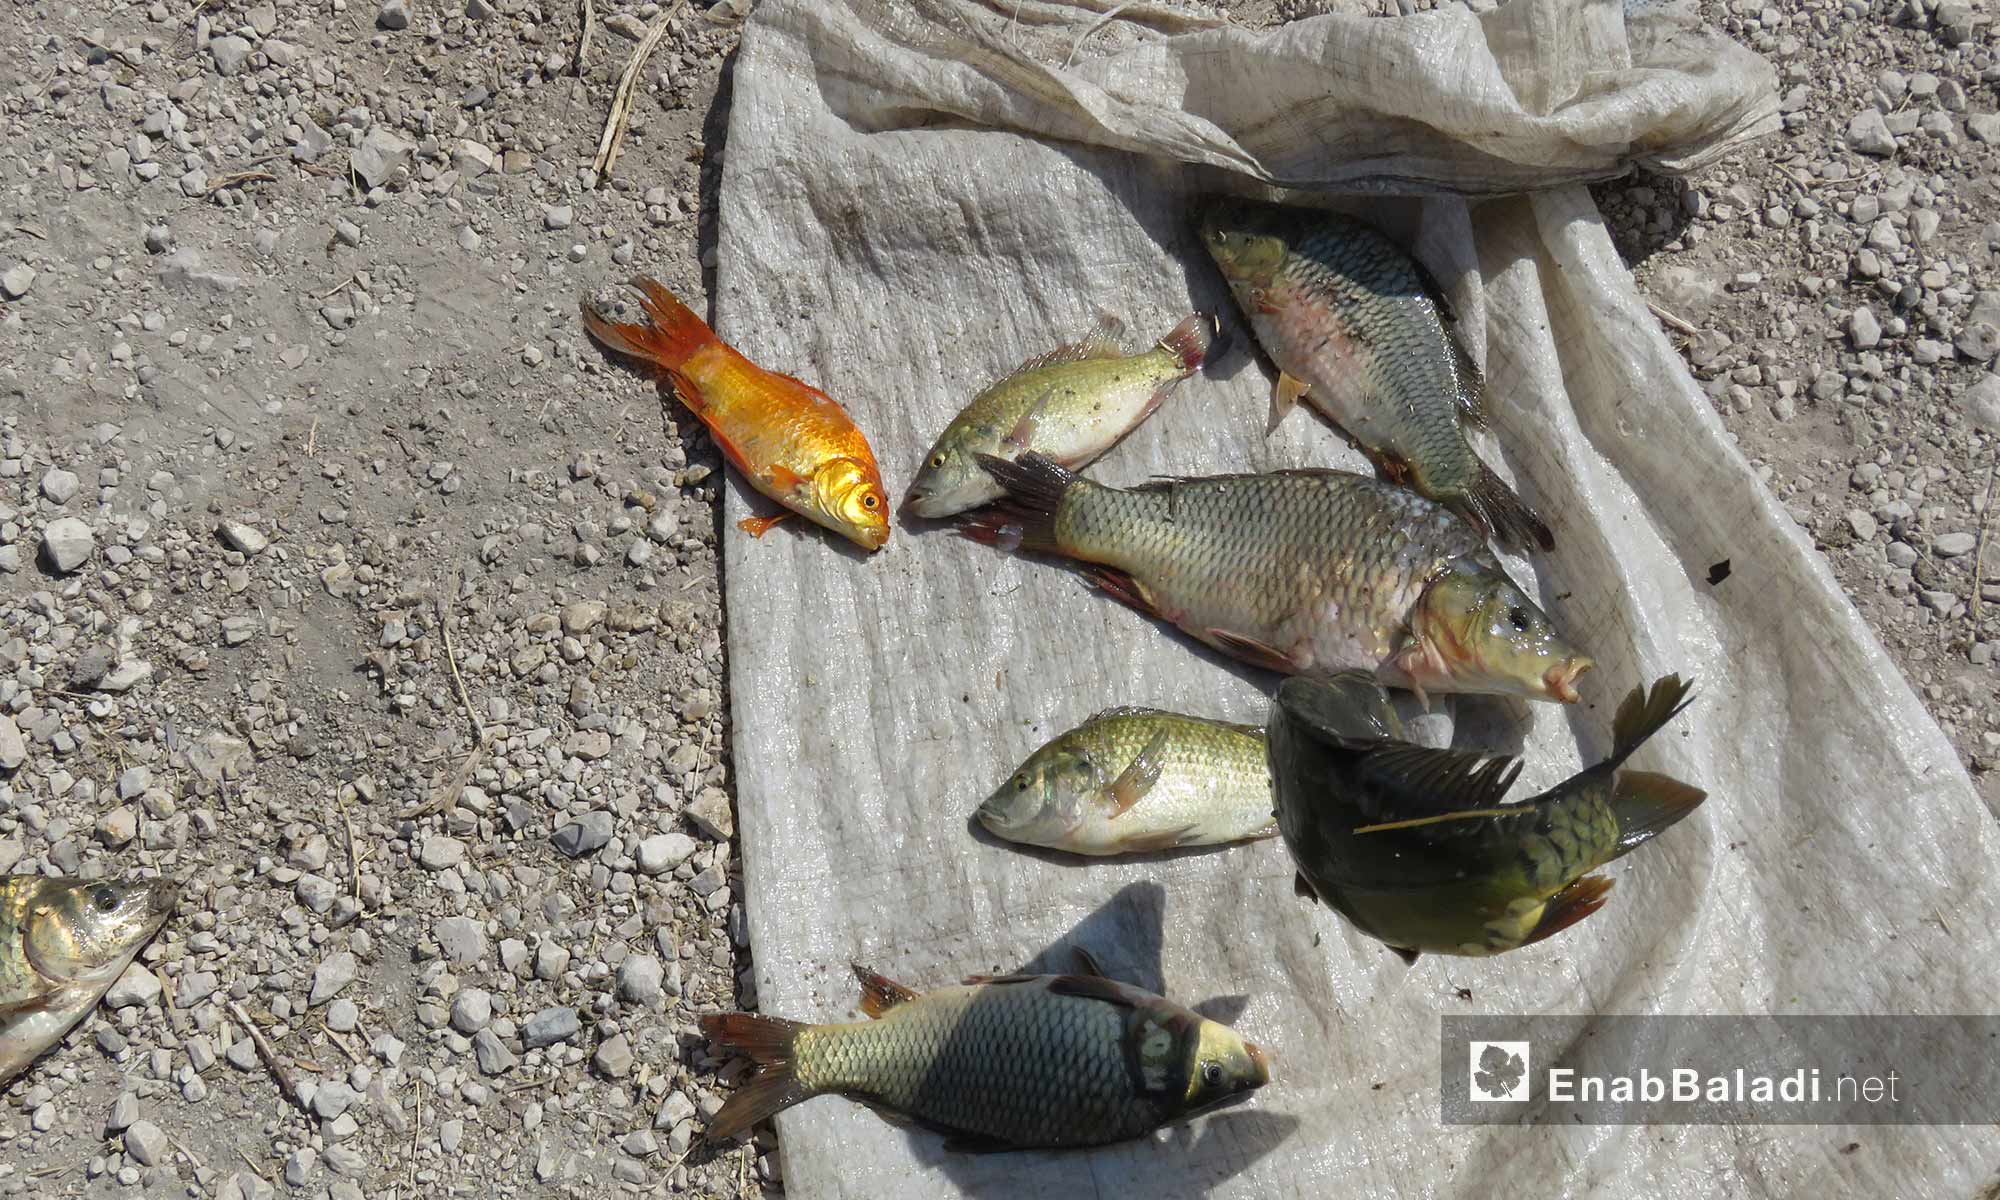 أنواع من الأسماك تم صيدها من نهر العاصي بريف حماة الشمالي - 15 آب 2017 (عنب بلدي)